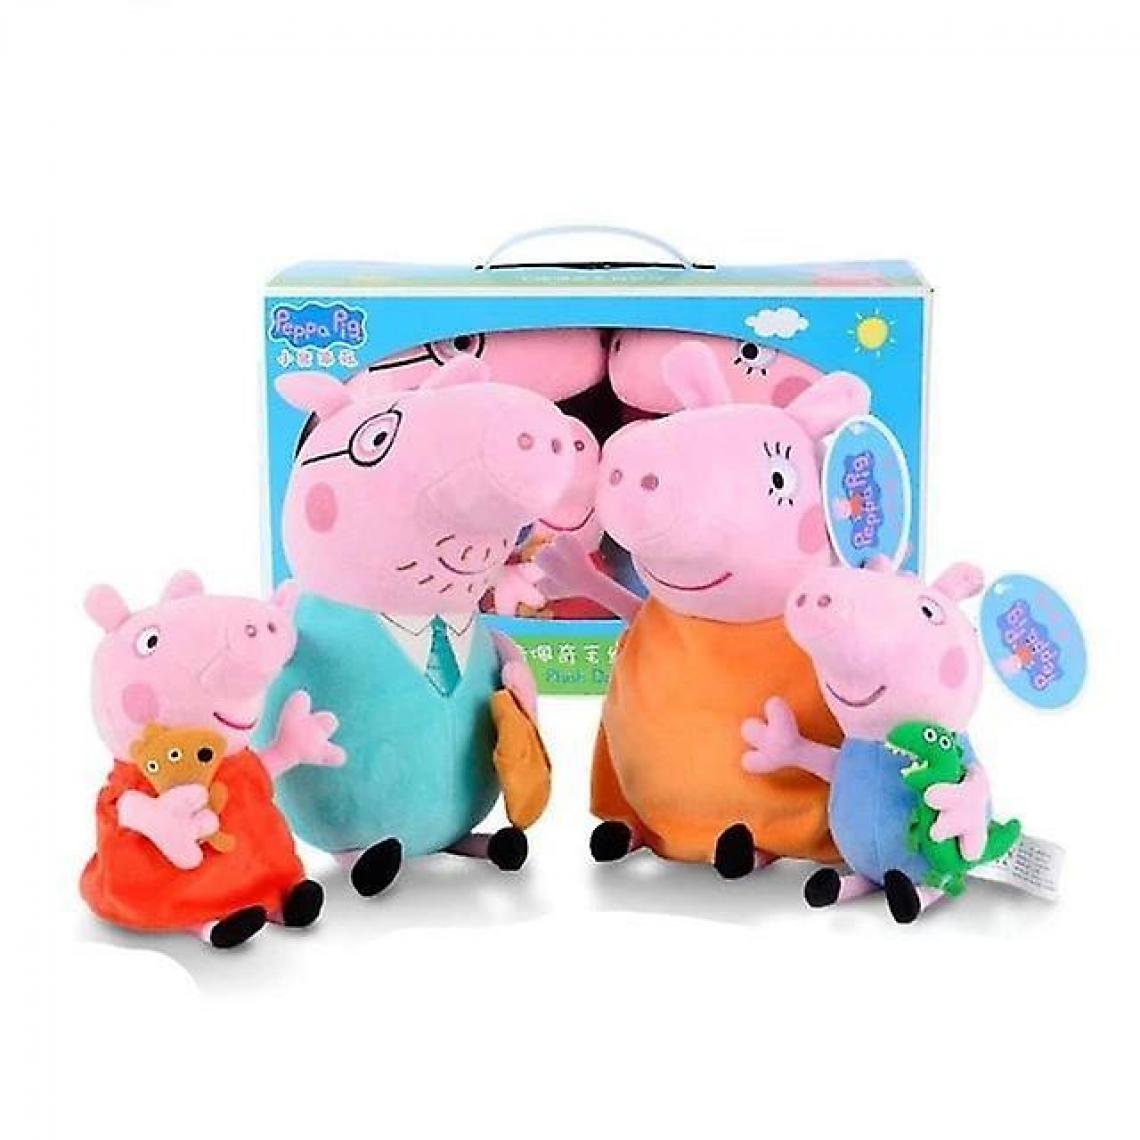 Universal - Peppa Pig George Family Peluche - Peppa Pig Poupée remplie de cochon décoration de fête (19-30 cm) - Animaux